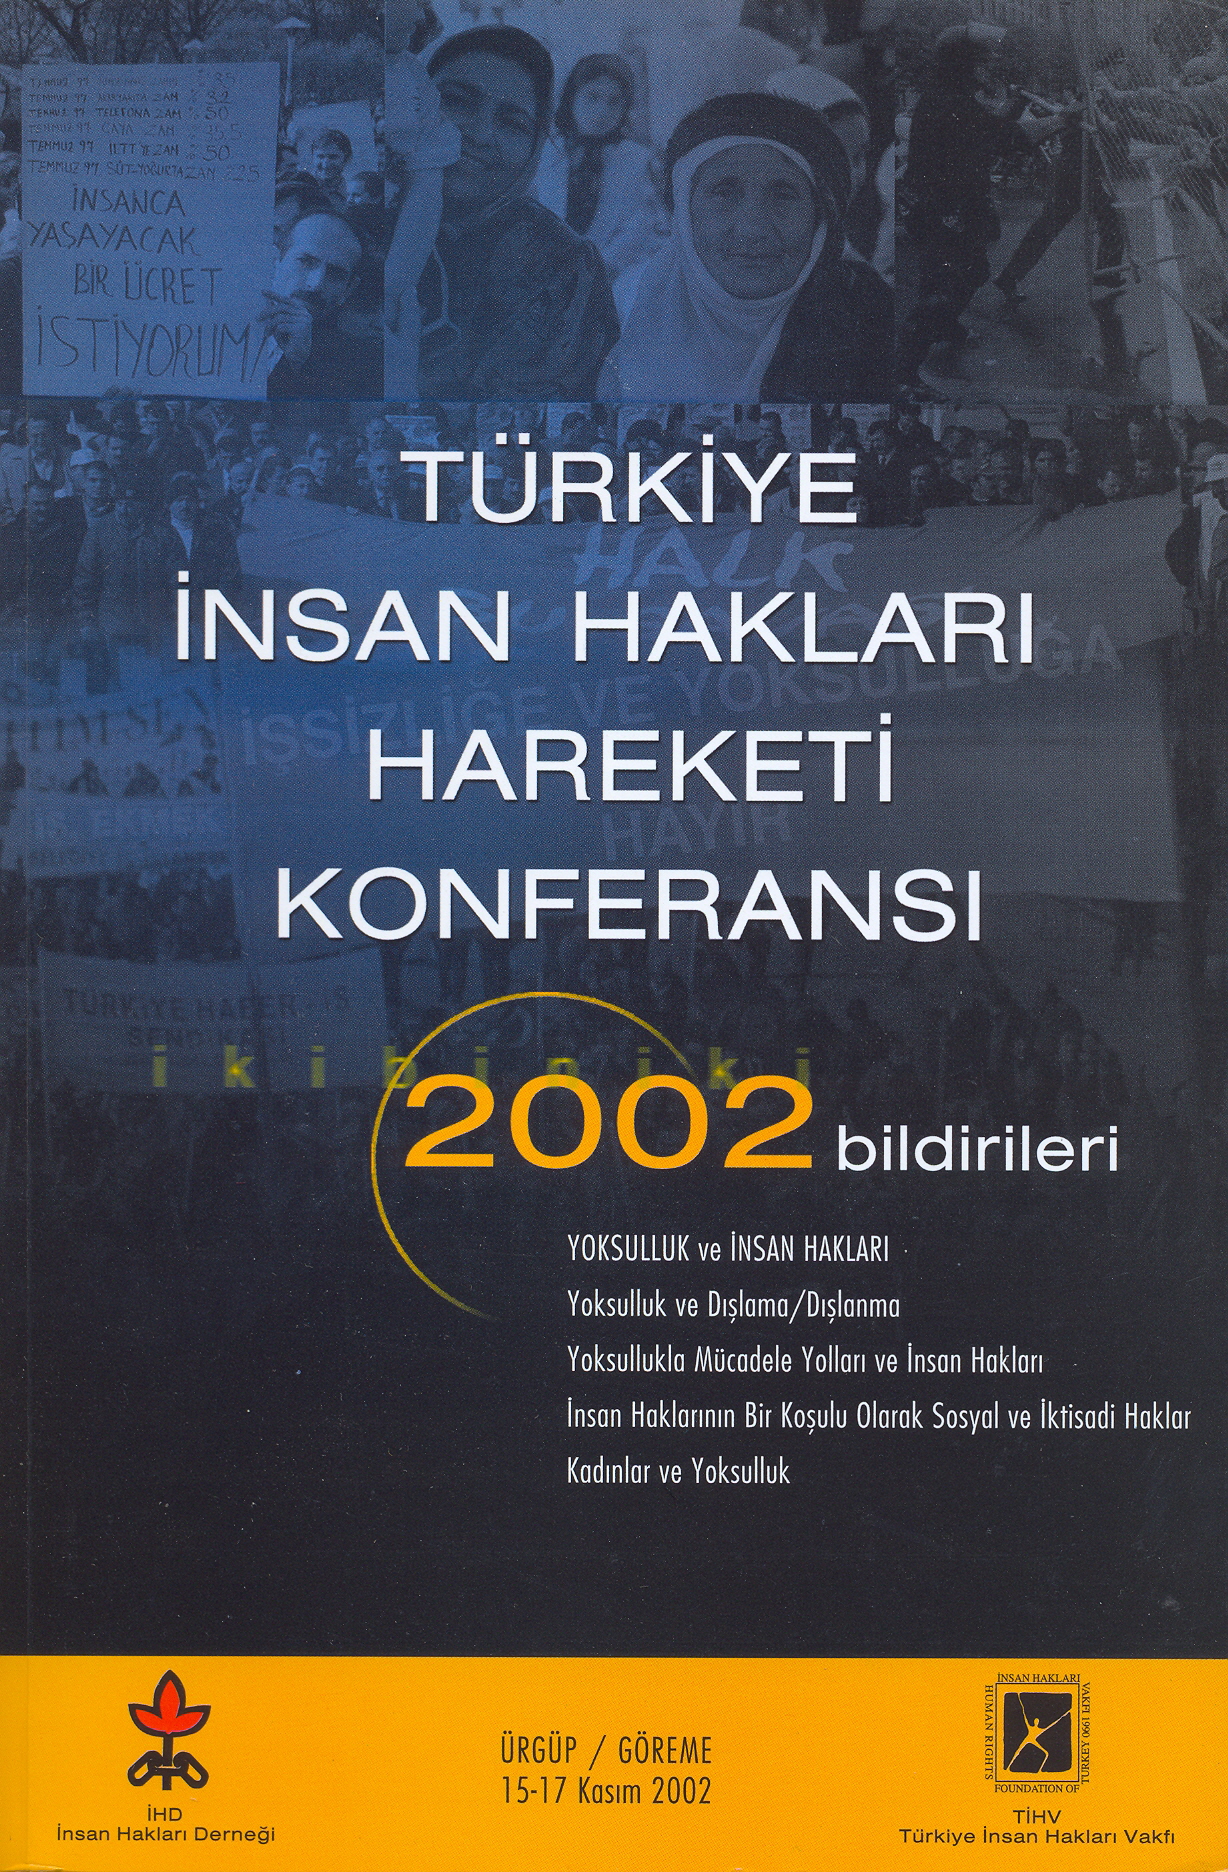 Türkiye İnsan Hakları Hareketi 2002 yılı Nihai Rapor ve Sonuç Bildirgesi